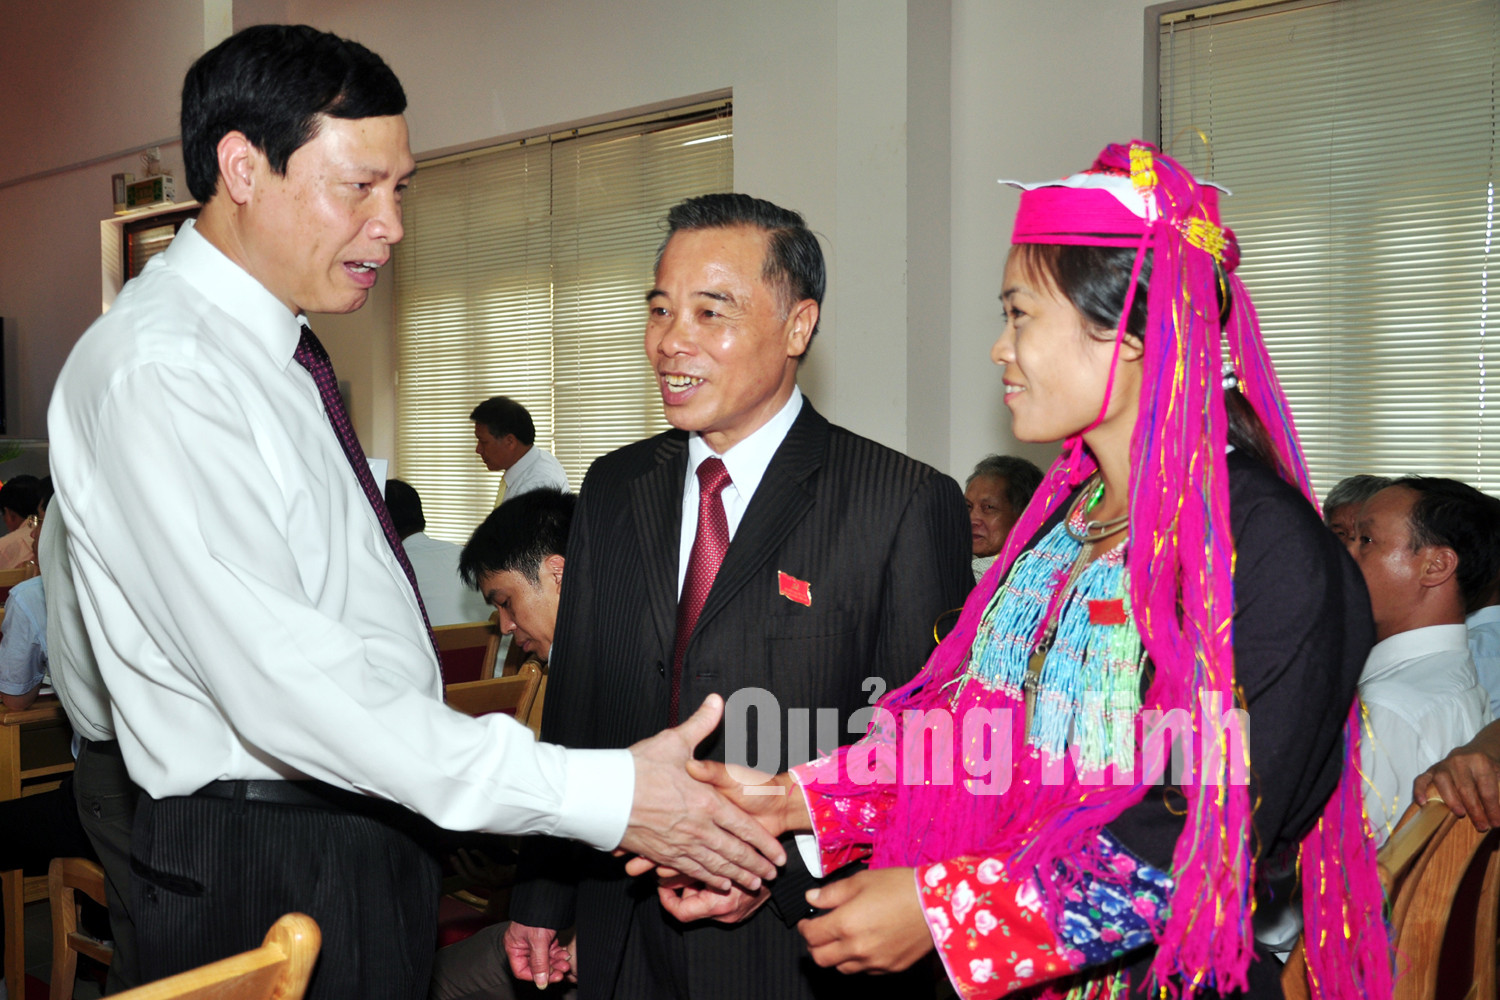 Đồng chí Nguyễn Đức Long, Phó Bí thư Tỉnh ủy, Chủ tịch UBND tỉnh trò chuyện với các đại biểu